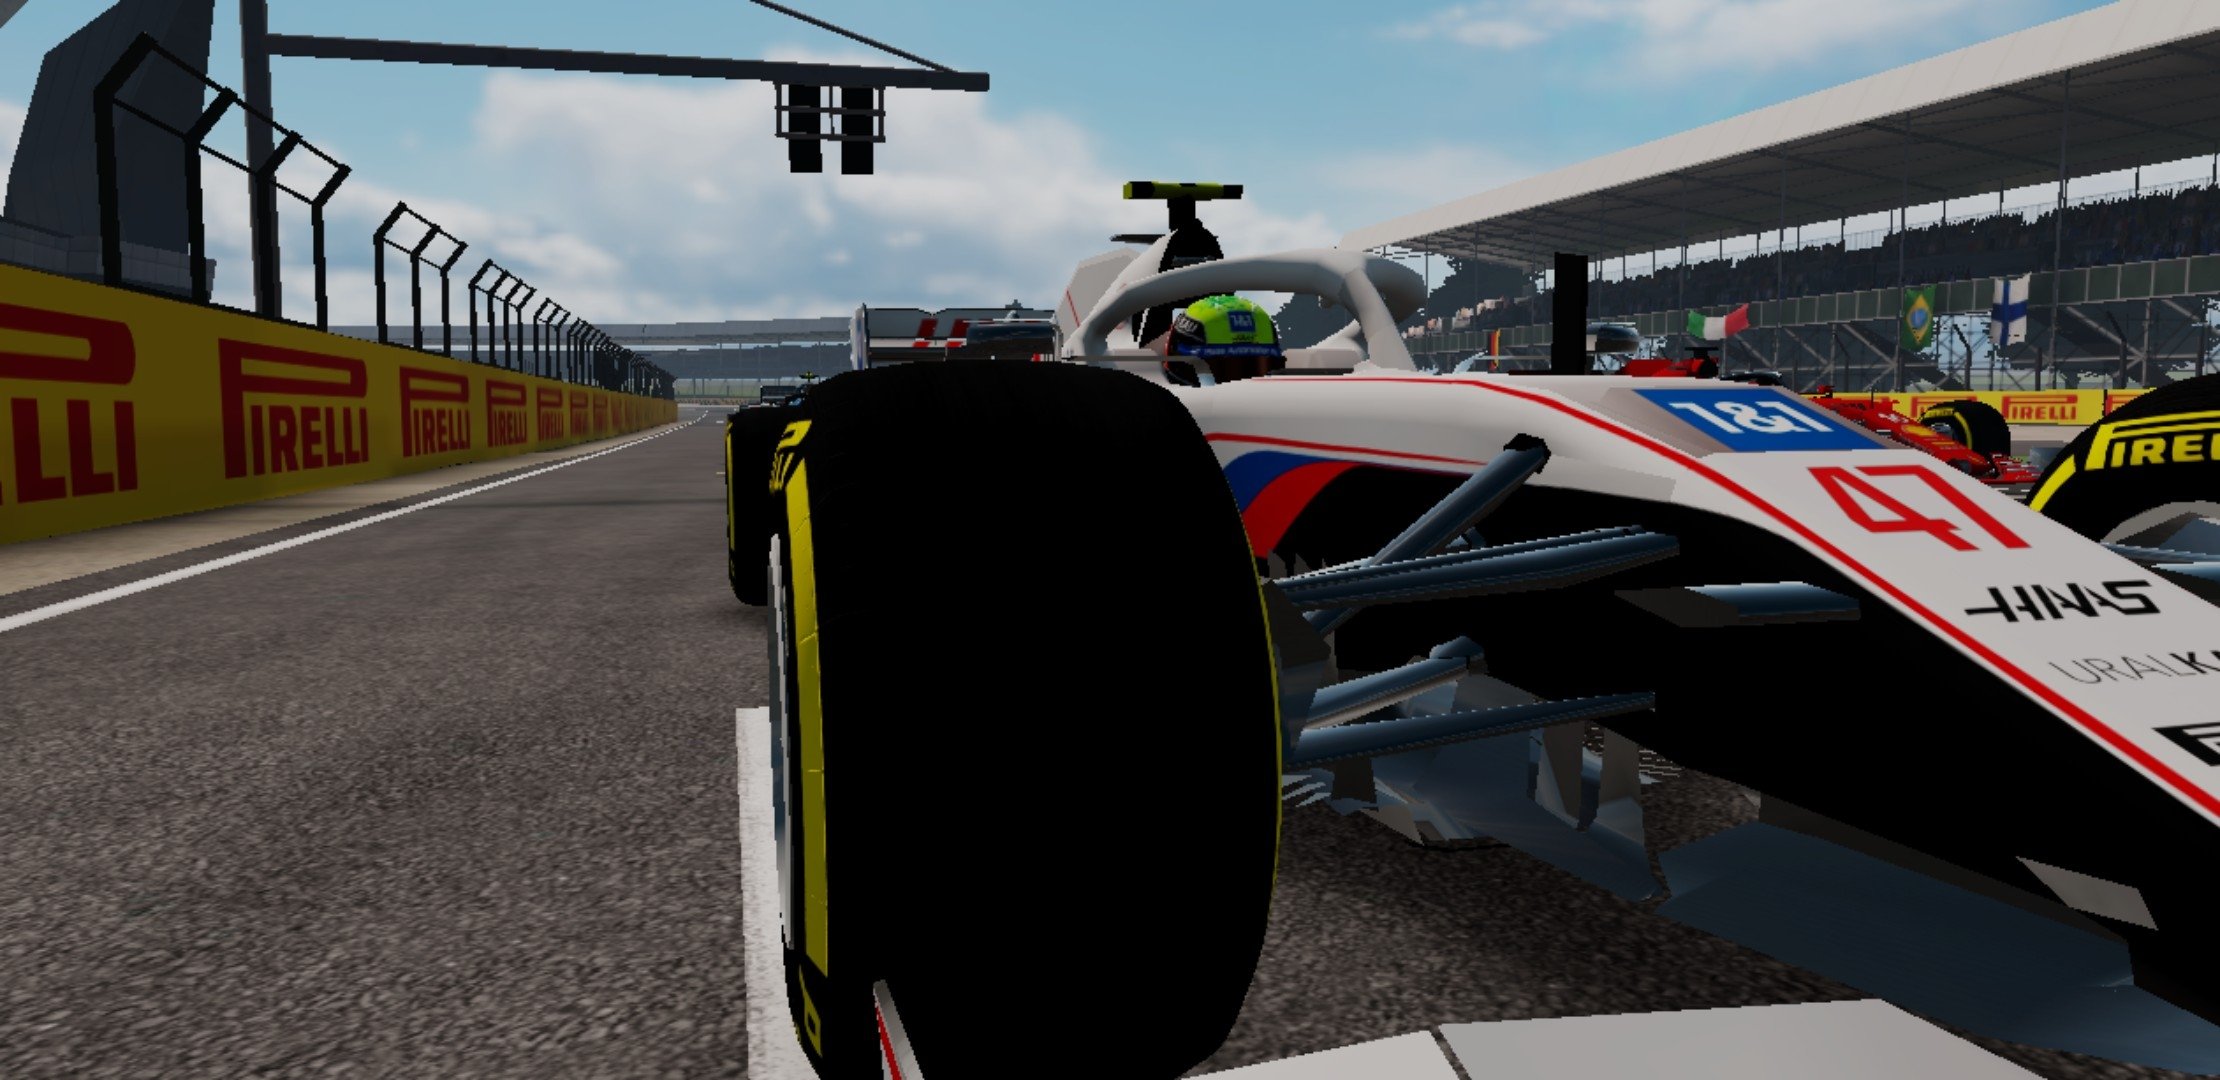 Jogos carros Fórmula dos EUA versão móvel andróide iOS apk baixar